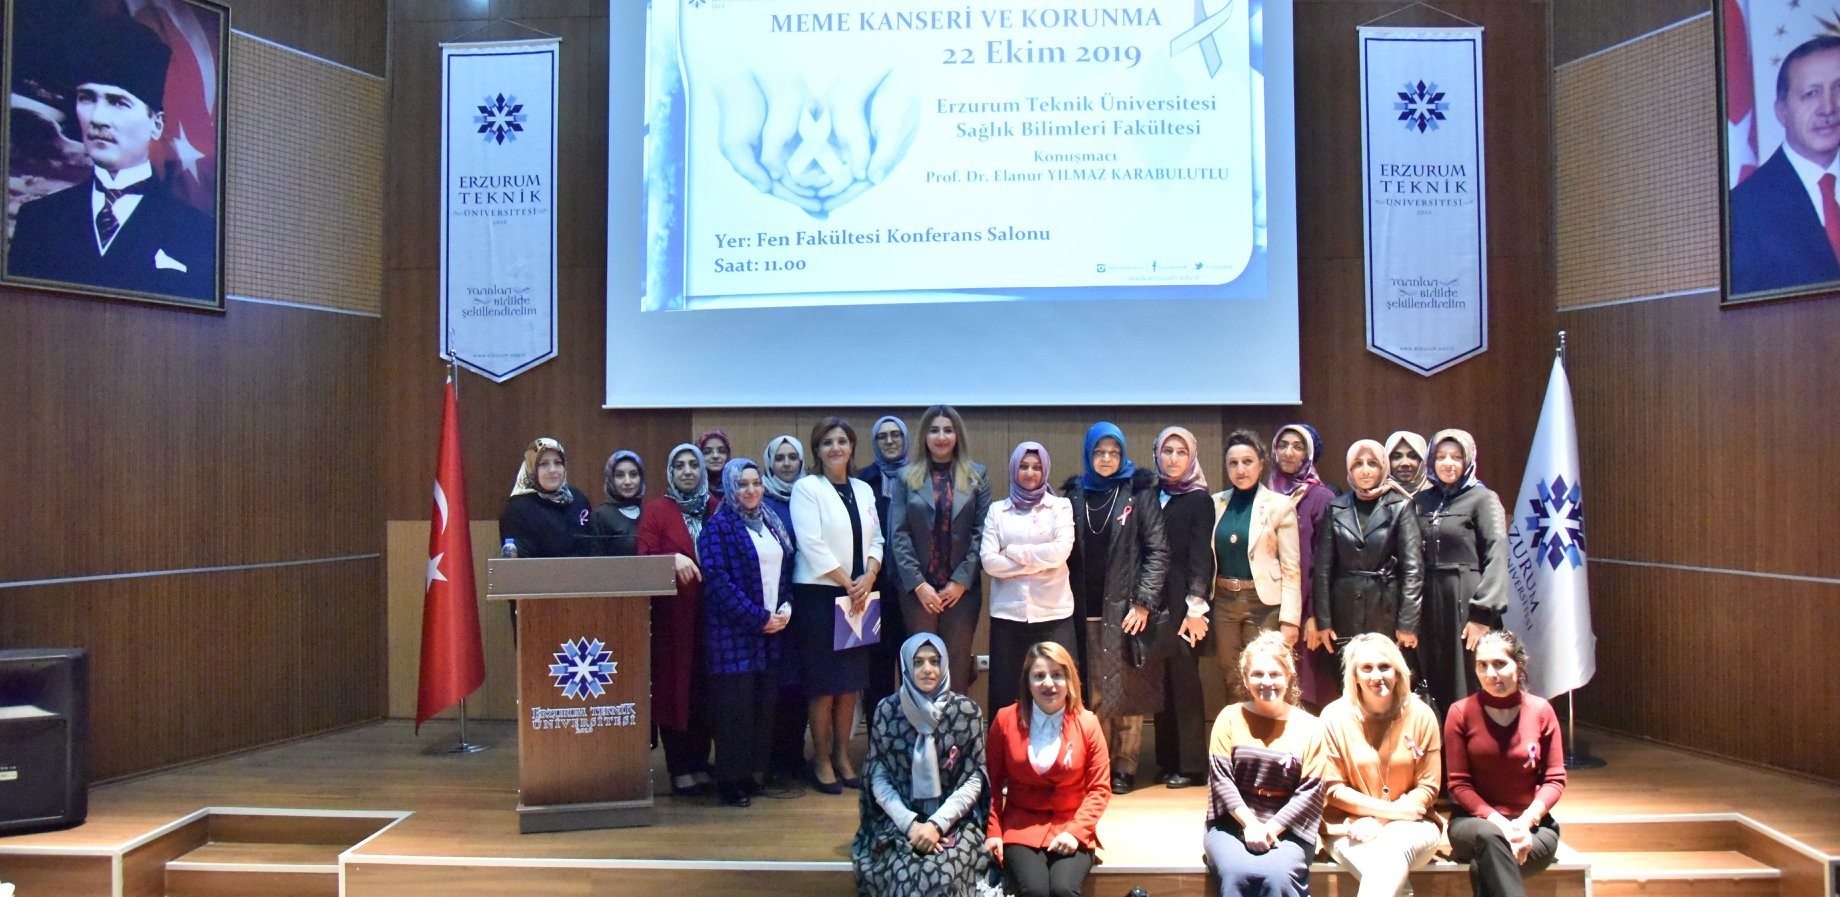 ETÜ’de "Meme Kanseri ve Korunma Konferansı" gerçekleştirildi